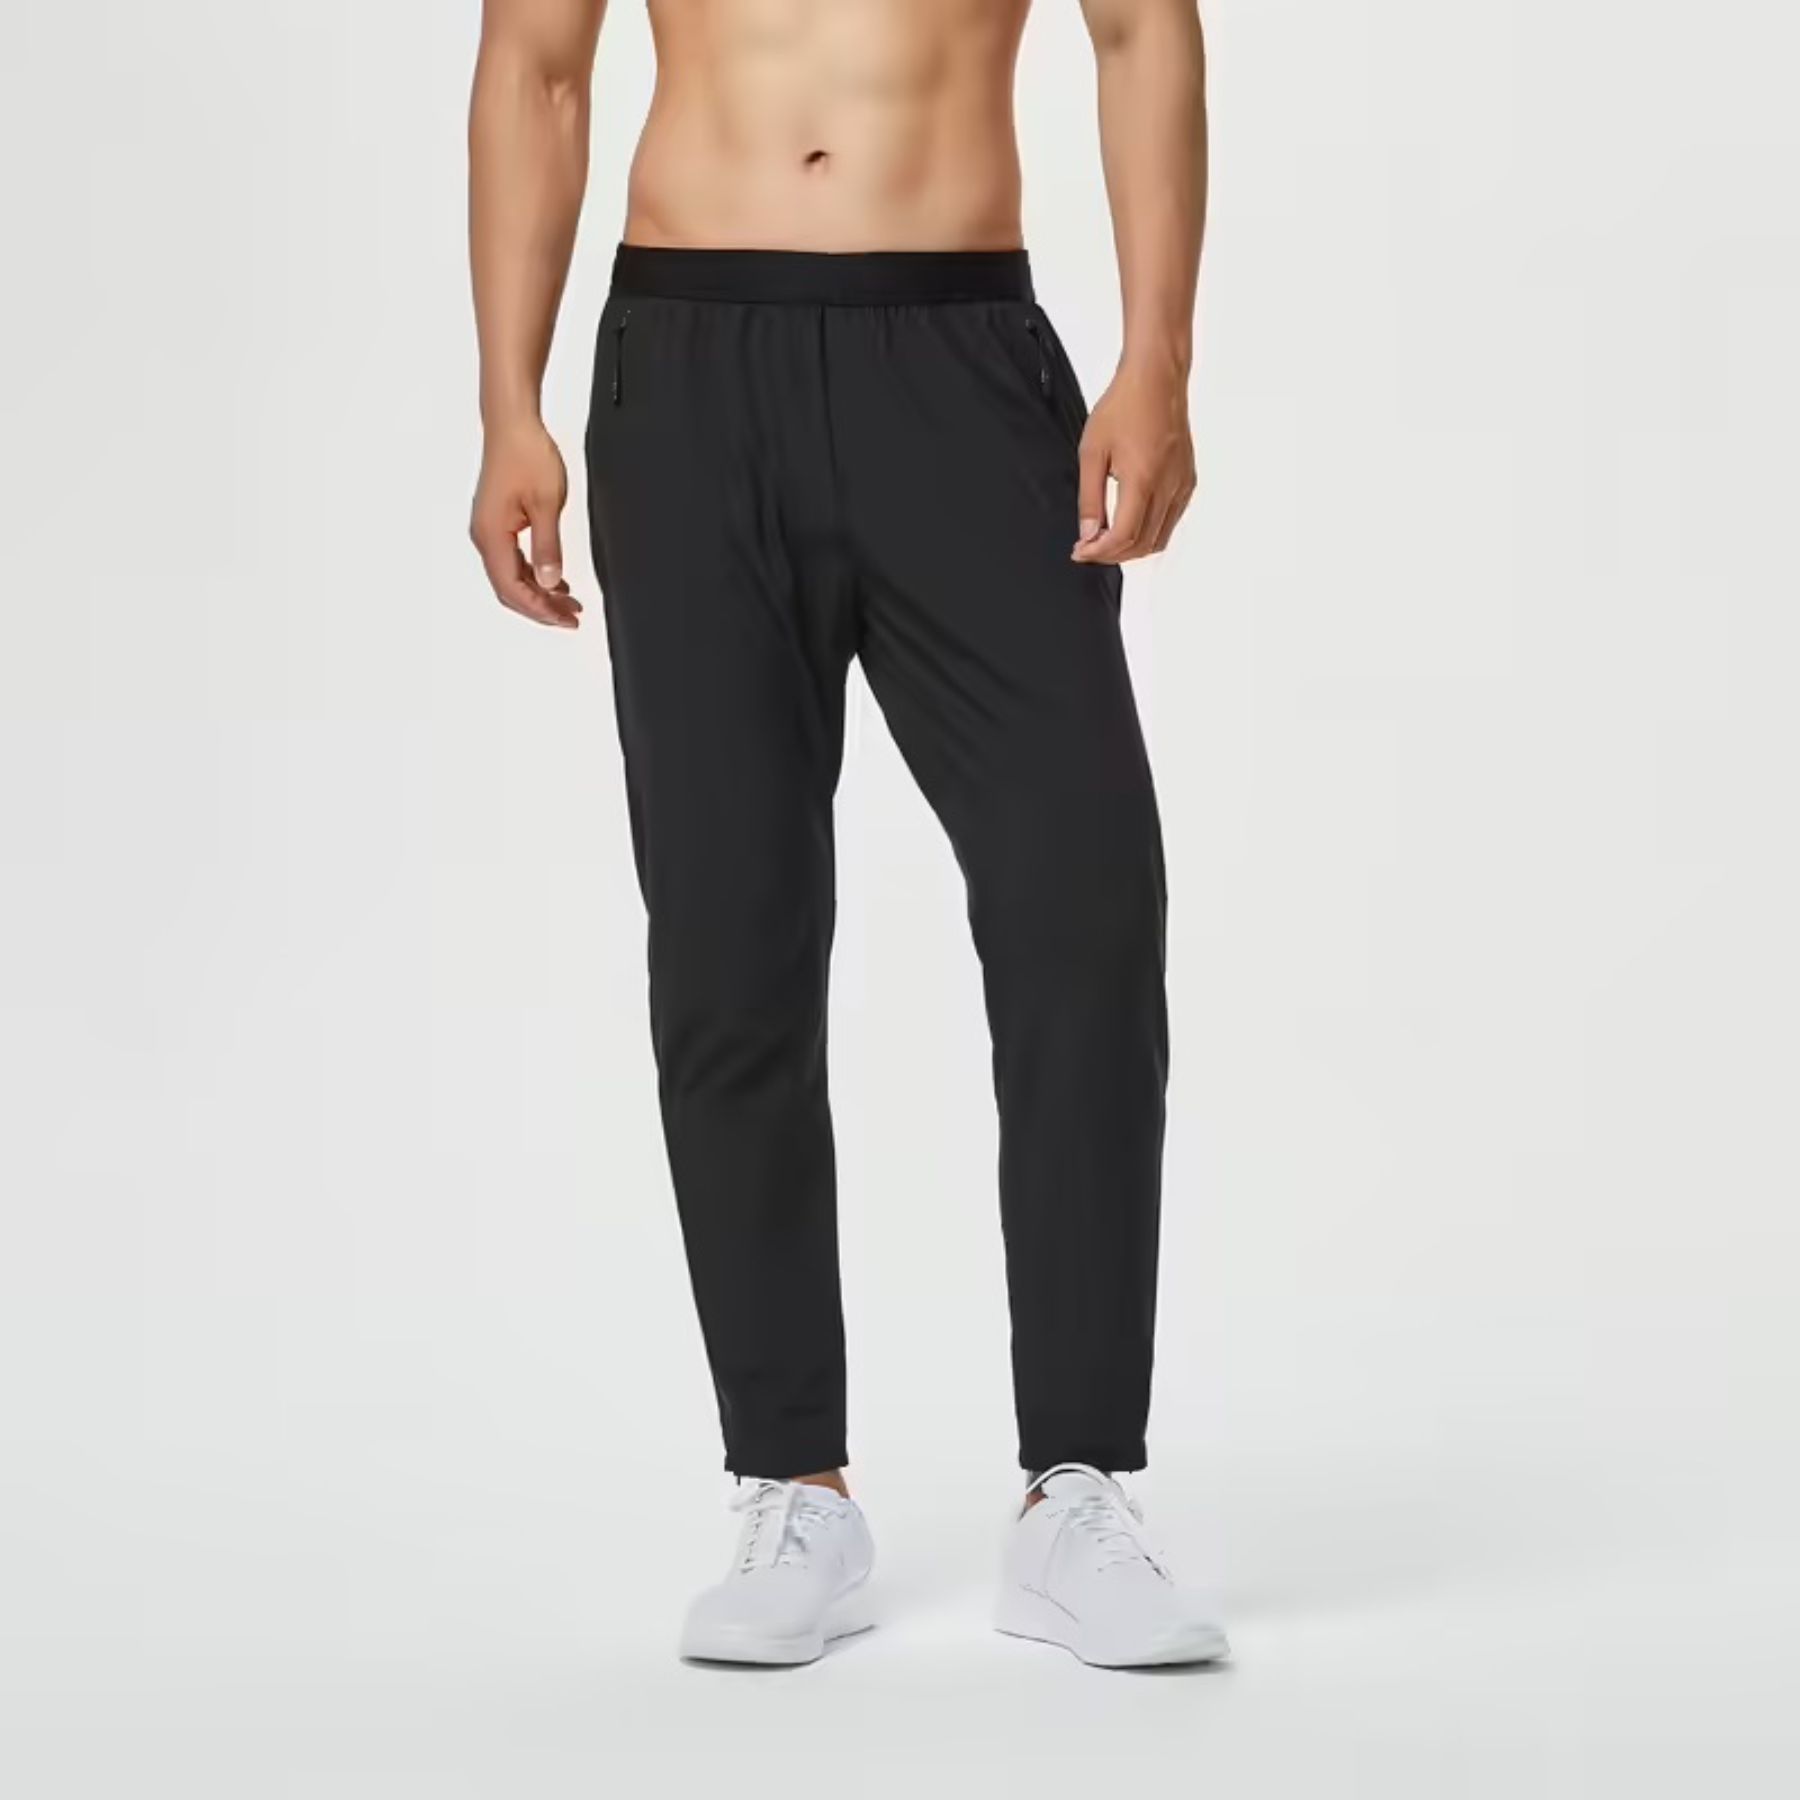 Pantalones de chándal elásticos para hombre, mallas deportivas informales,  trans